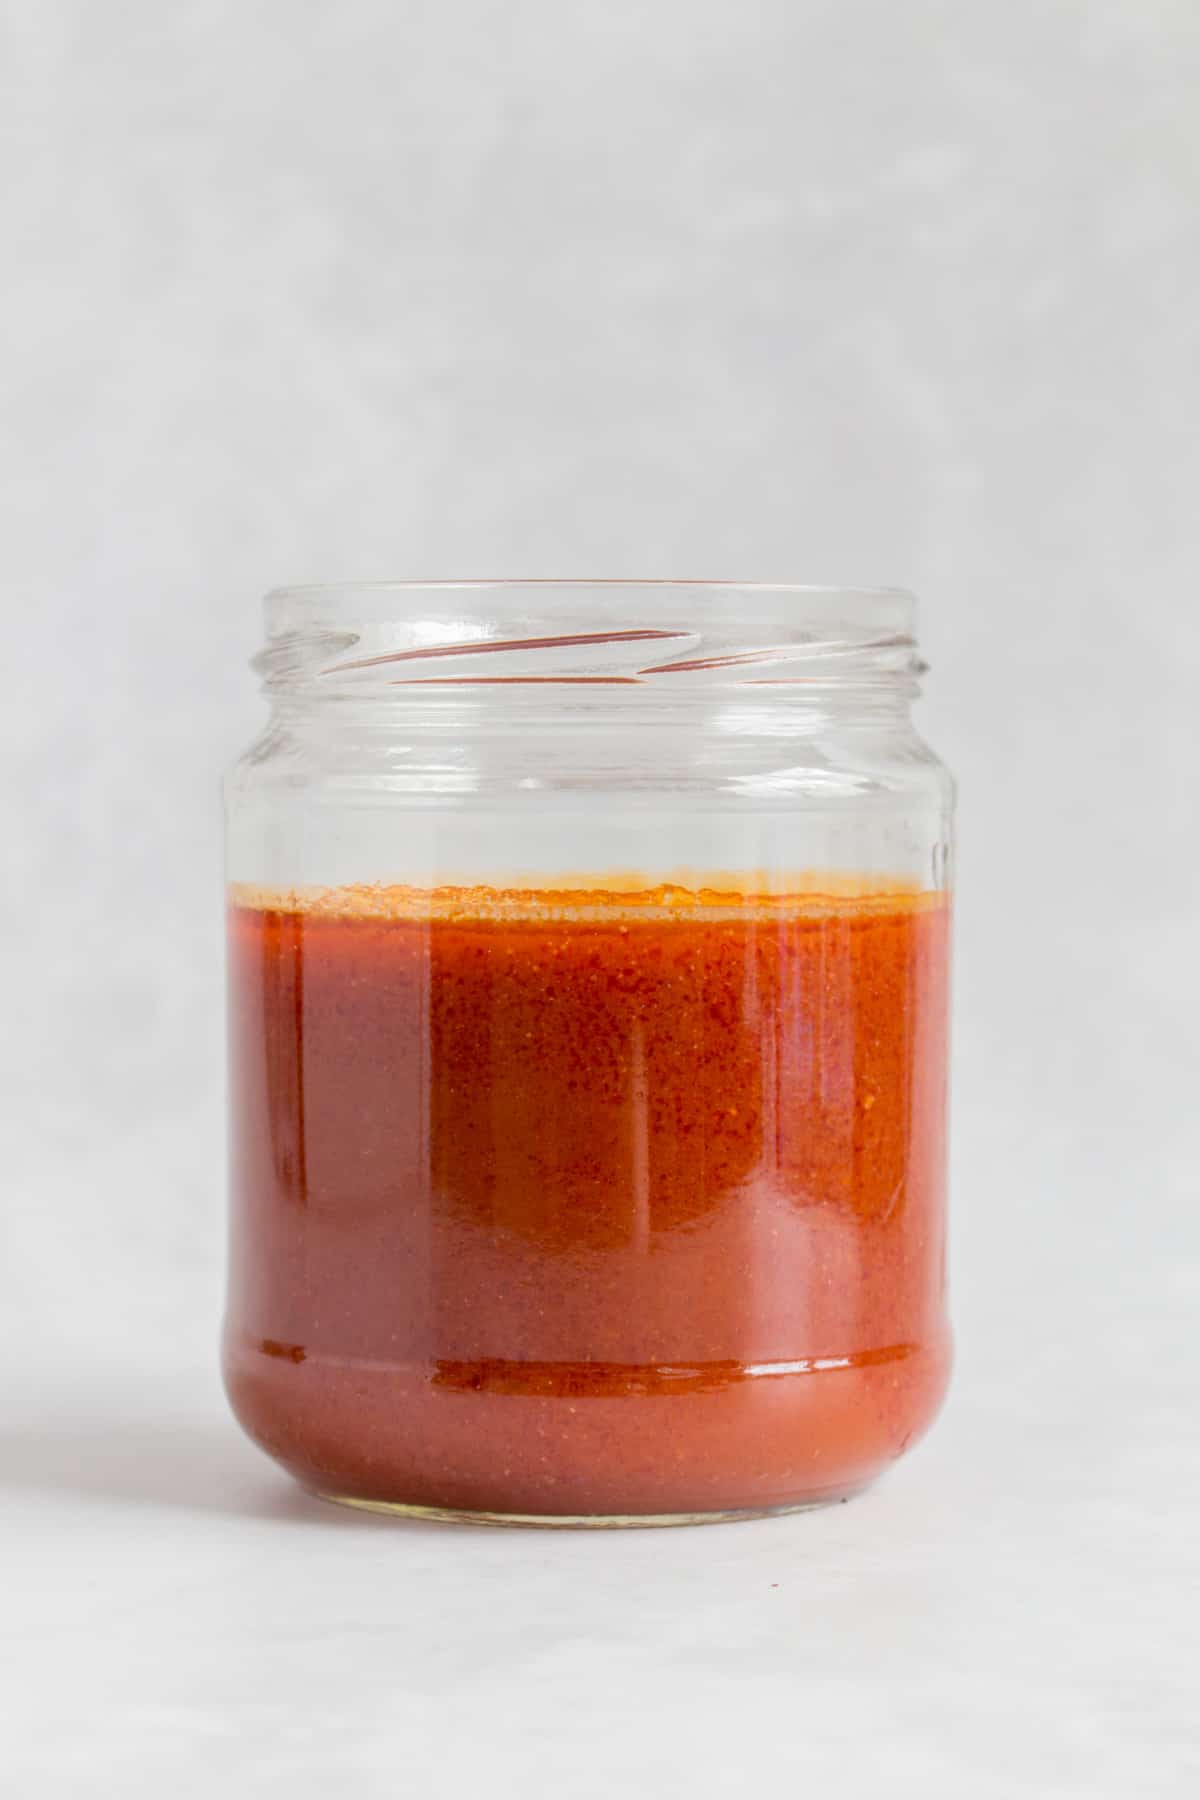 Buffalo sauce in a jar.